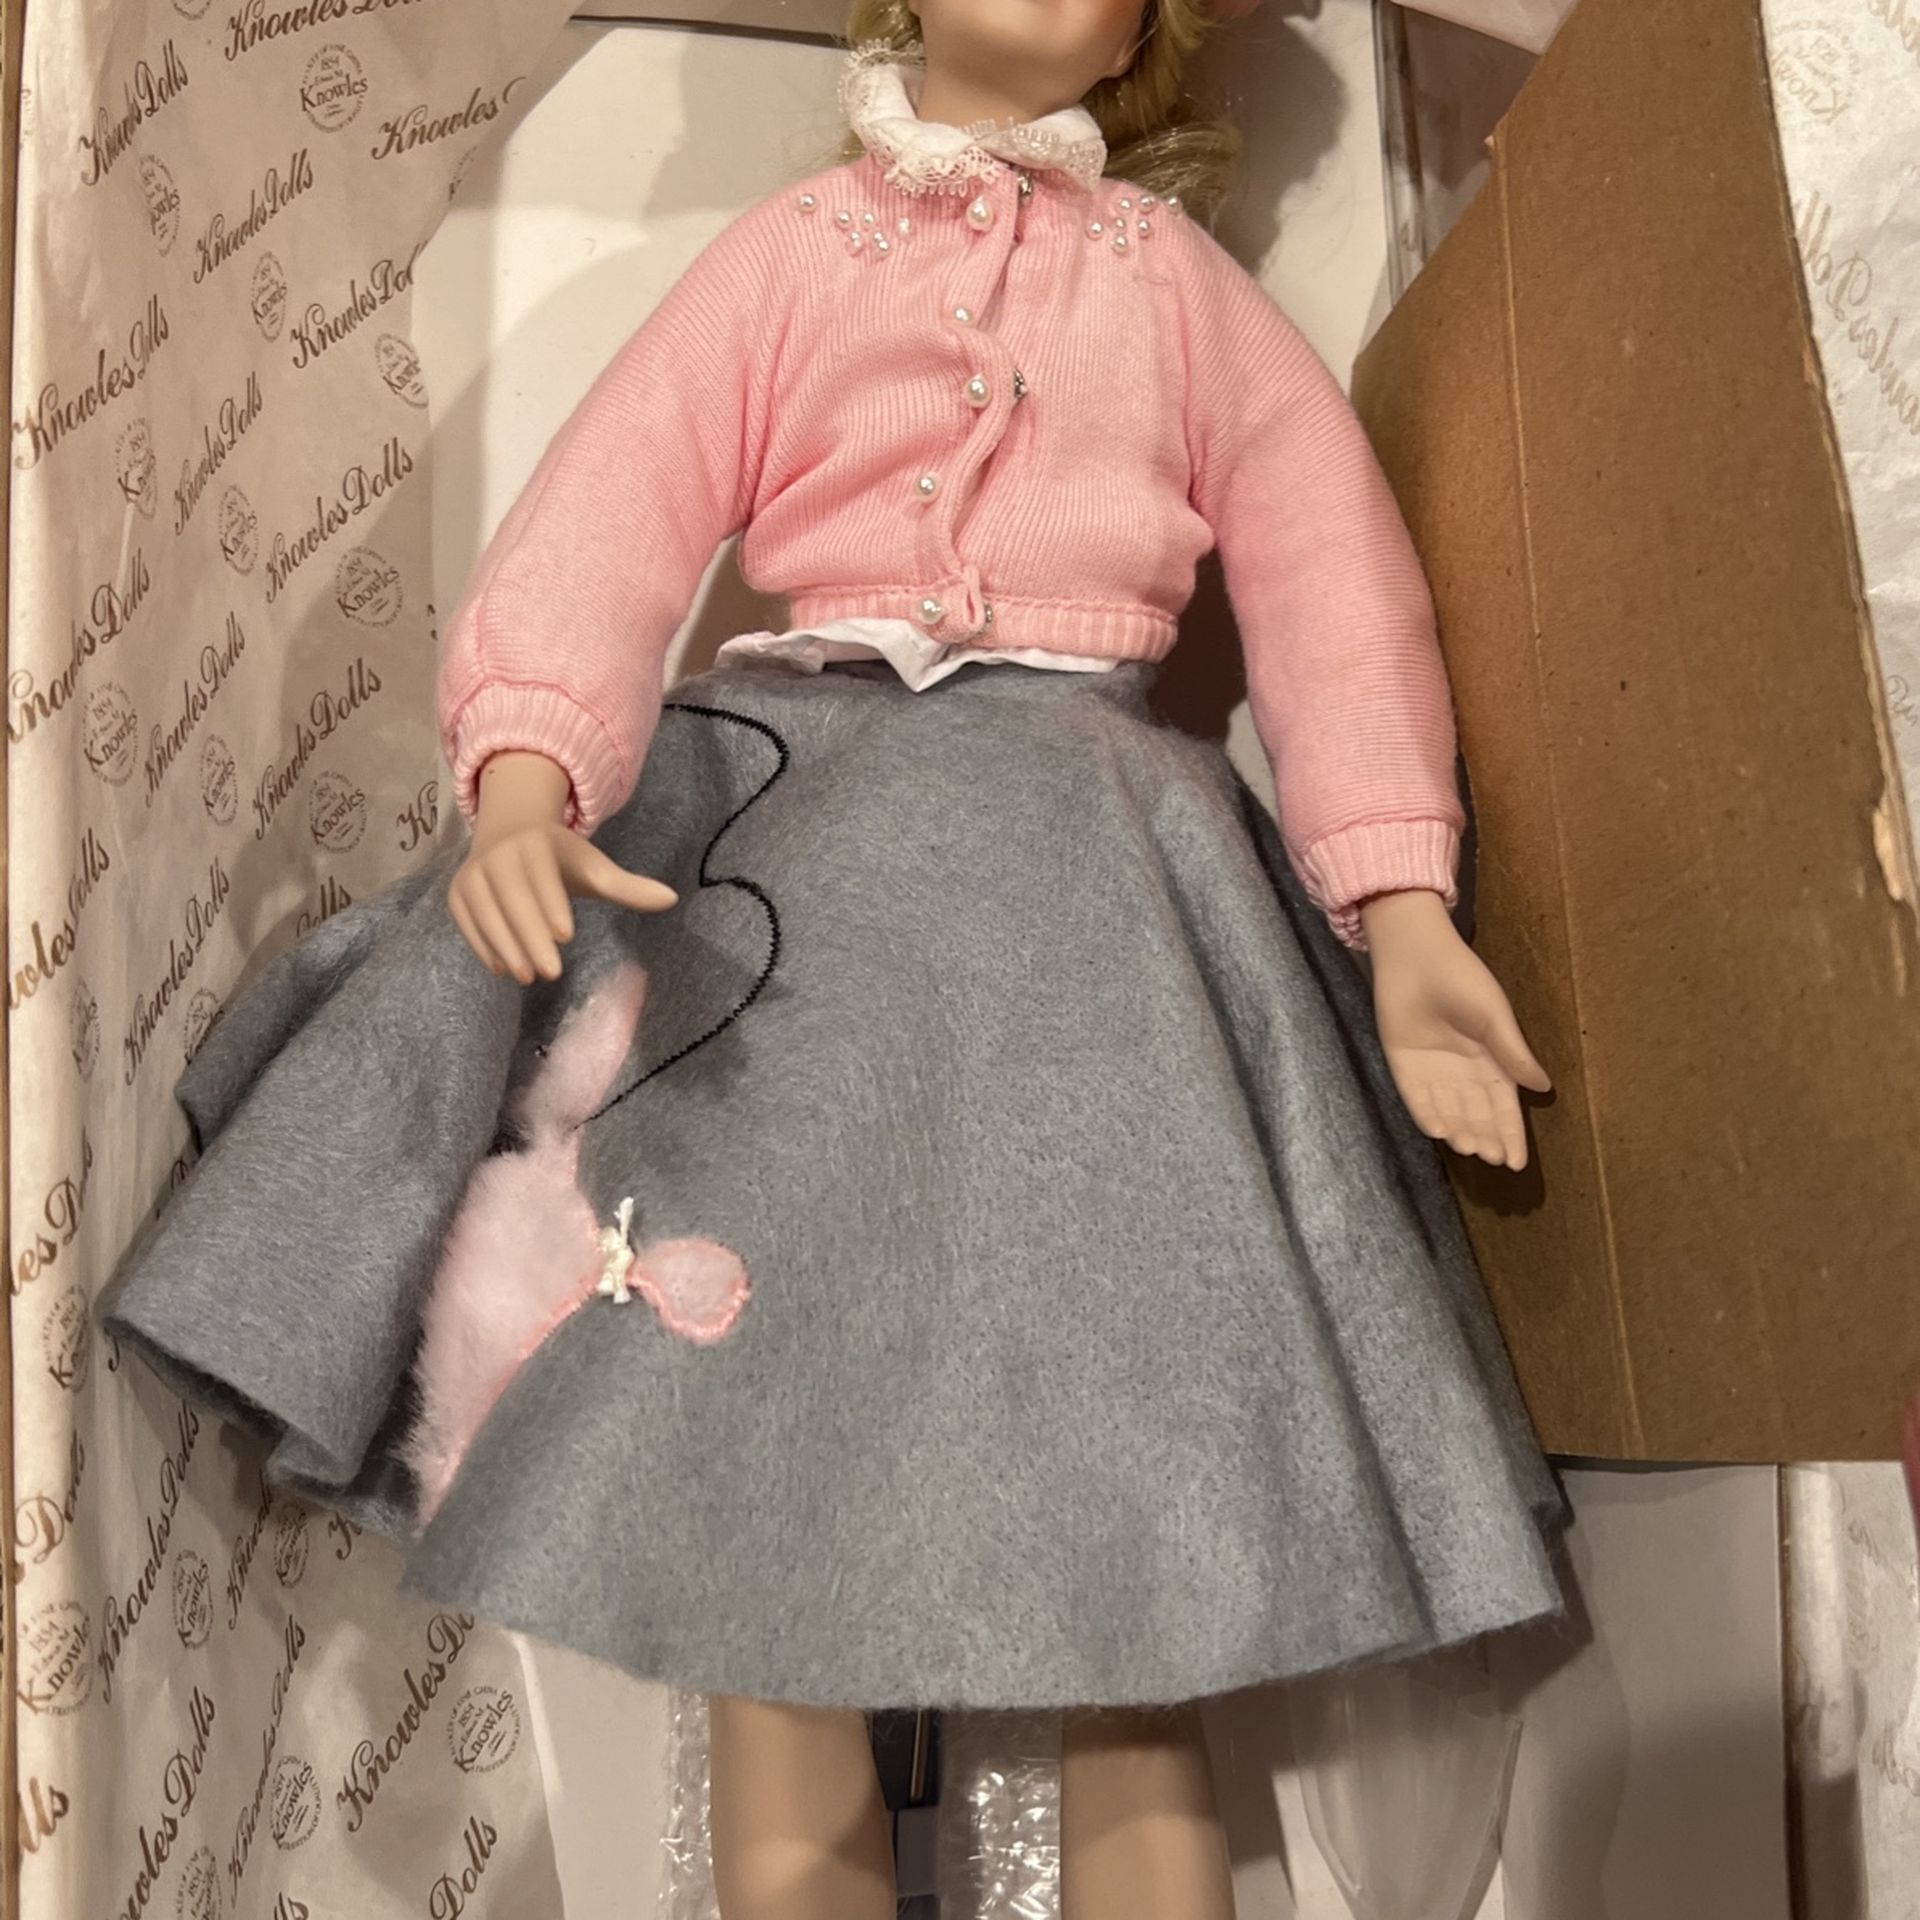 Peggy sue Doll